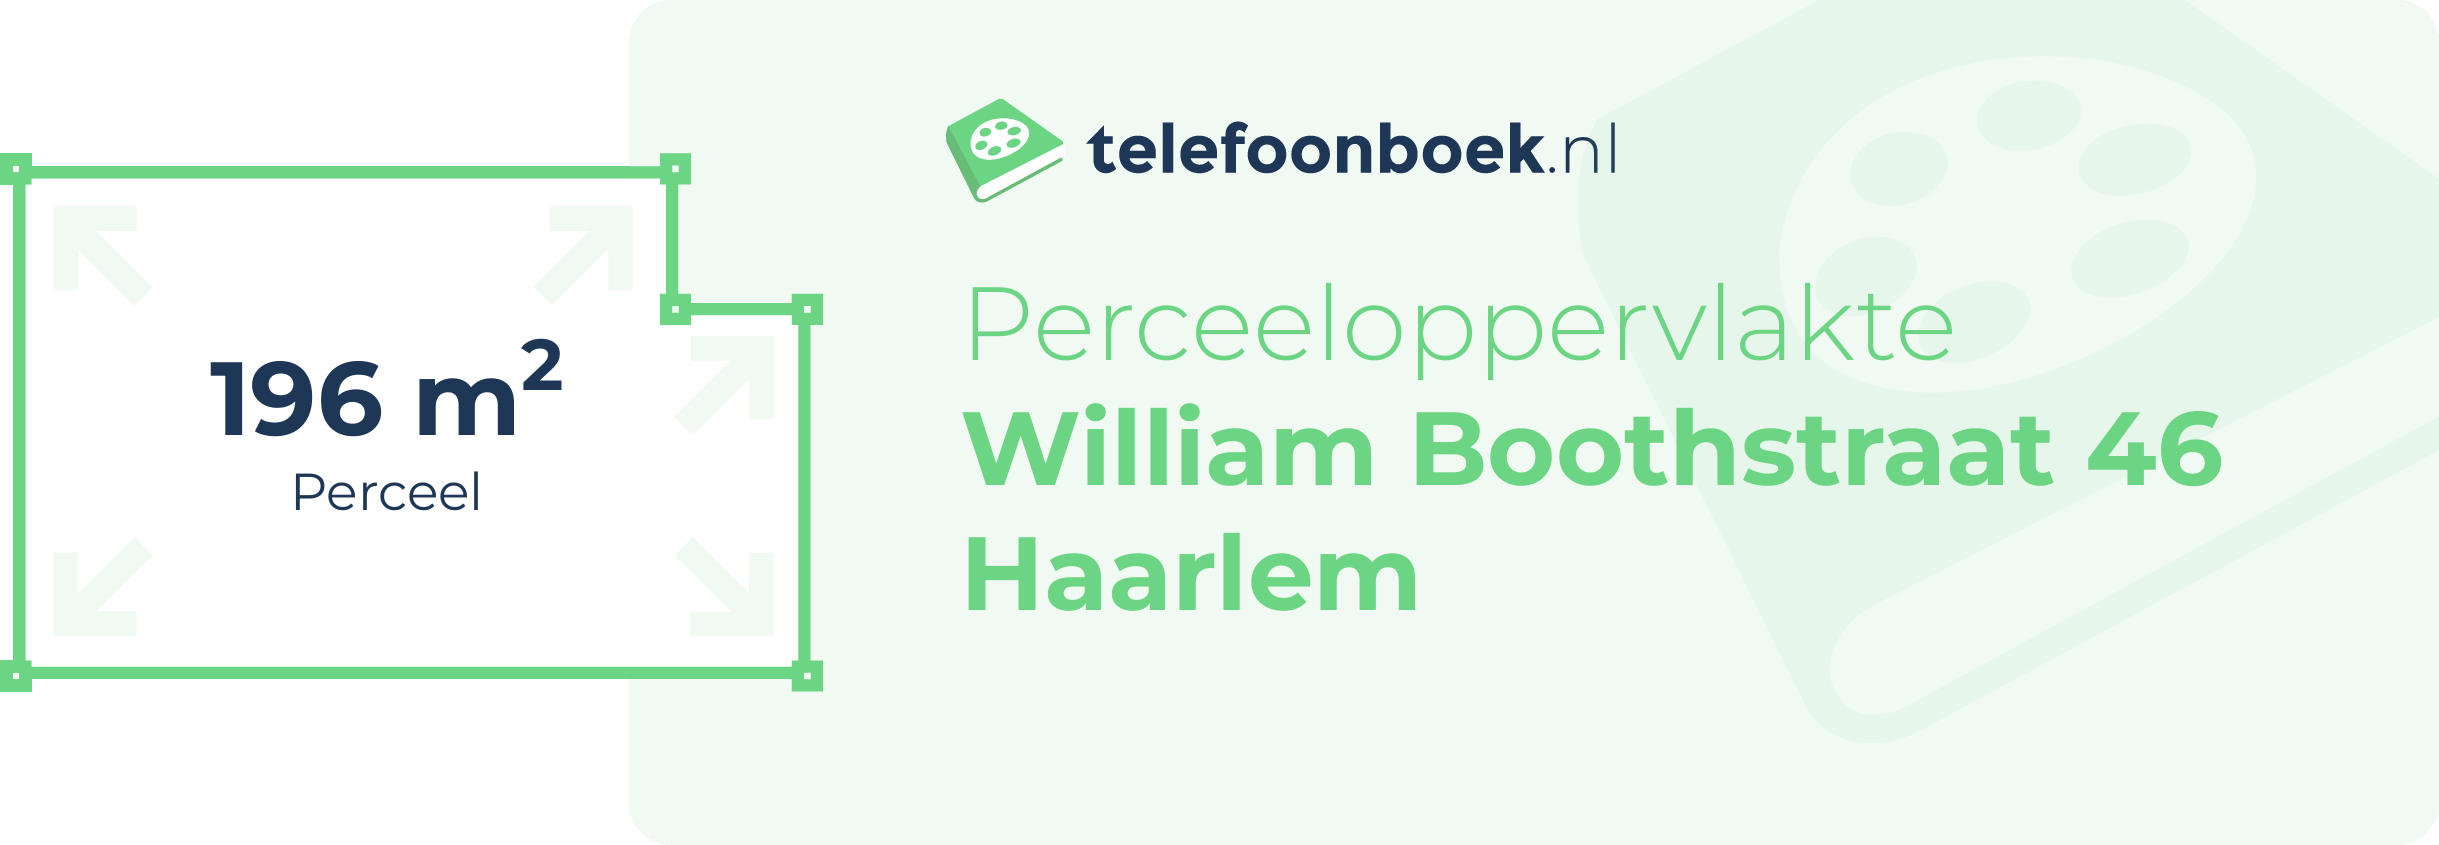 Perceeloppervlakte William Boothstraat 46 Haarlem